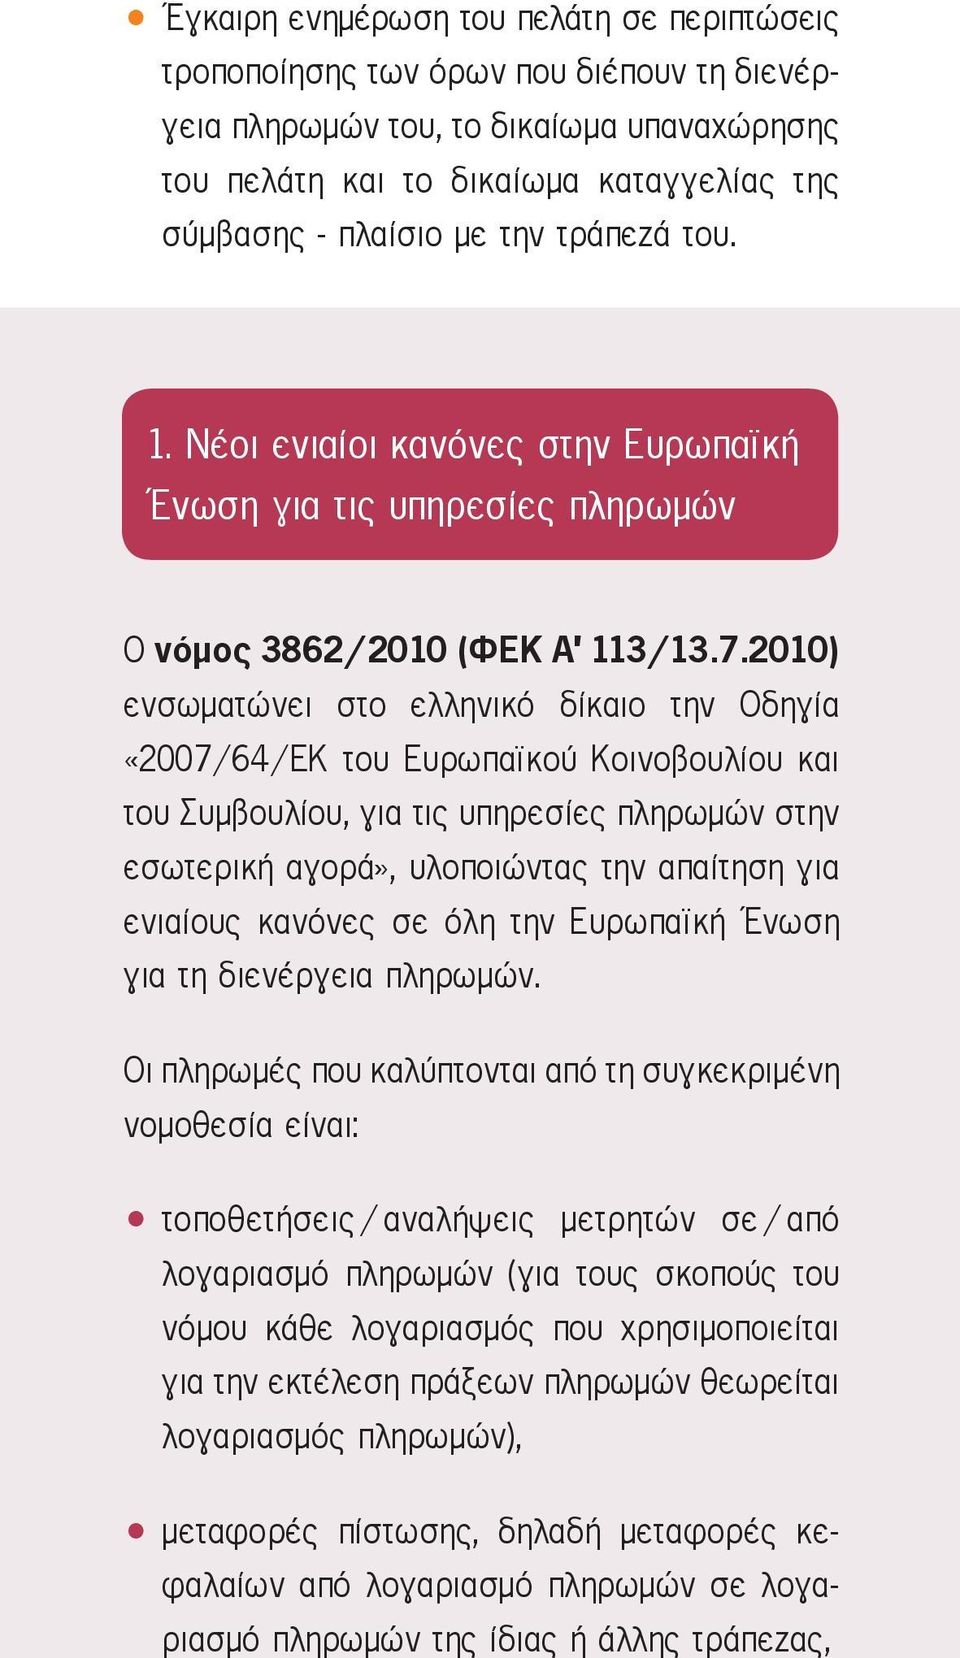 2010) ενσωματώνει στο ελληνικό δίκαιο την Οδηγία «2007/64/ΕΚ του Ευρωπαϊκού Κοινοβουλίου και του Συμβουλίου, για τις υπηρεσίες πληρωμών στην εσωτερική αγορά», υλοποιώντας την απαίτηση για ενιαίους